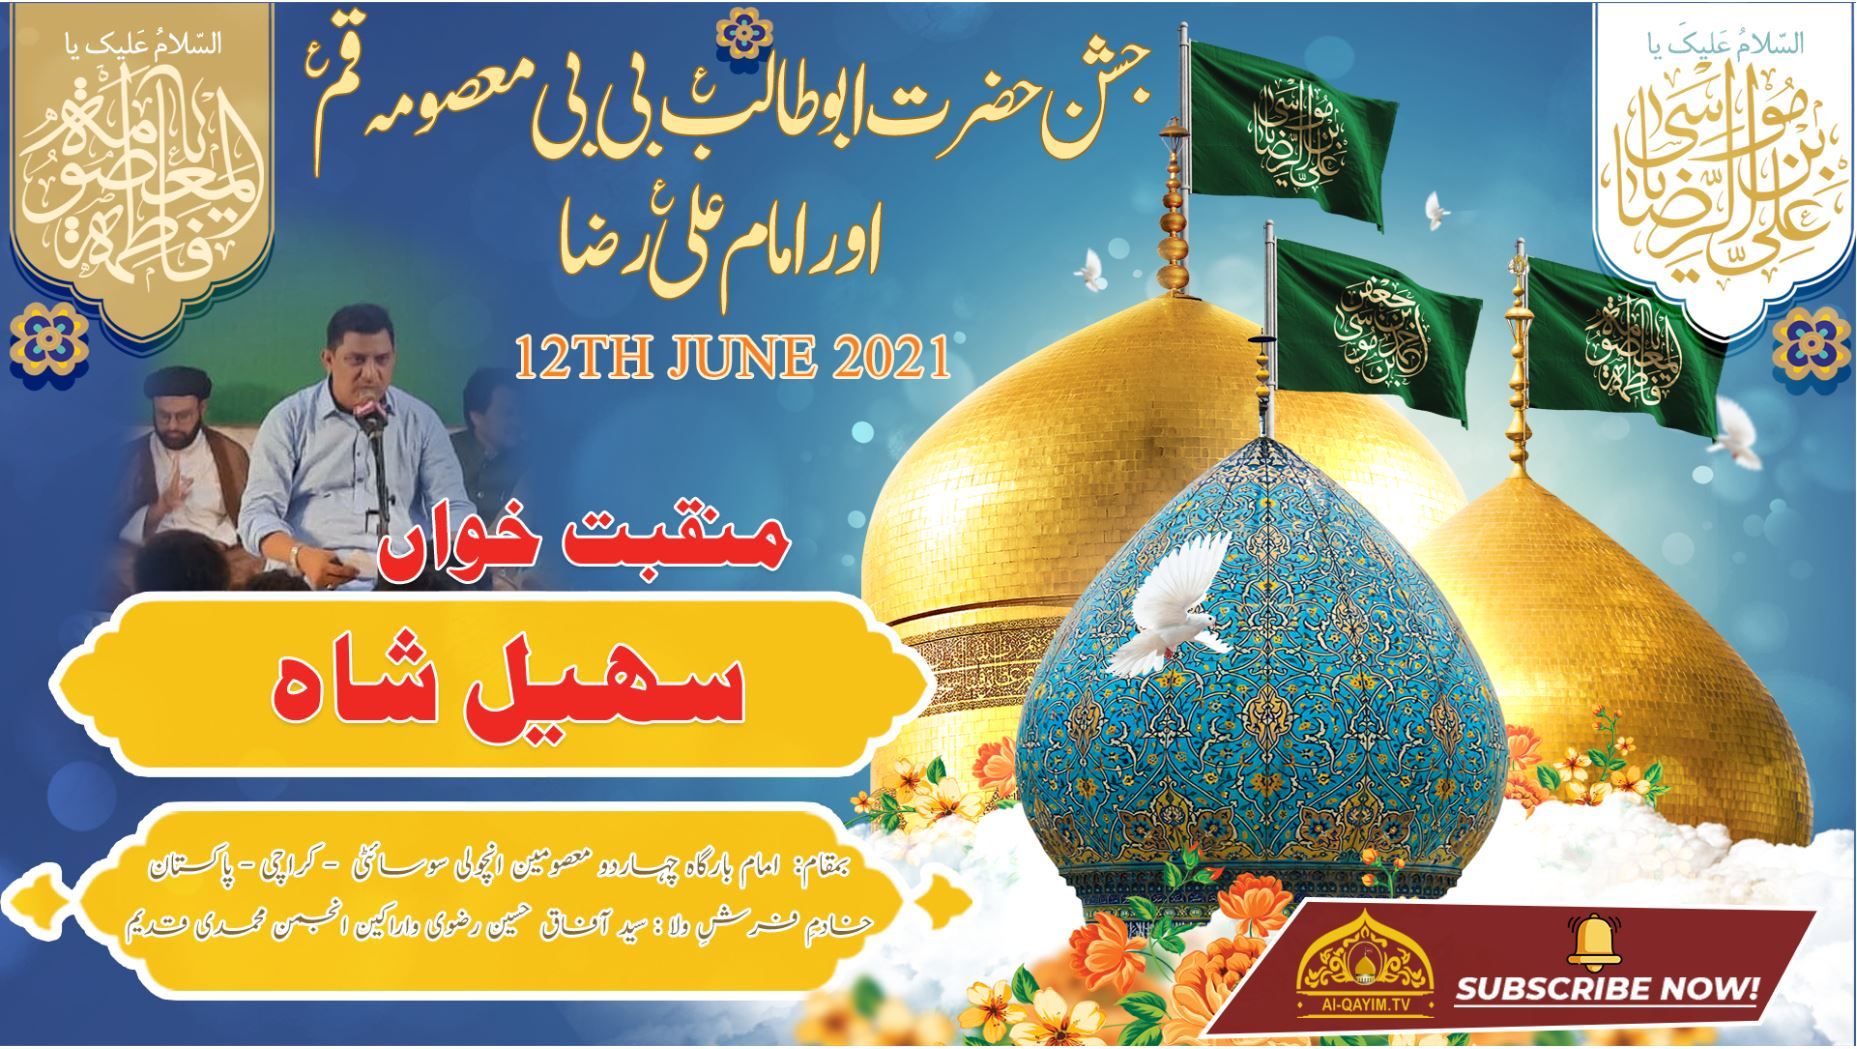 Manqabat | Sohail Shah | Jashan Bibi Masooma & Imam Ali Raza - 12 June 2021 - Ancholi - Karachi